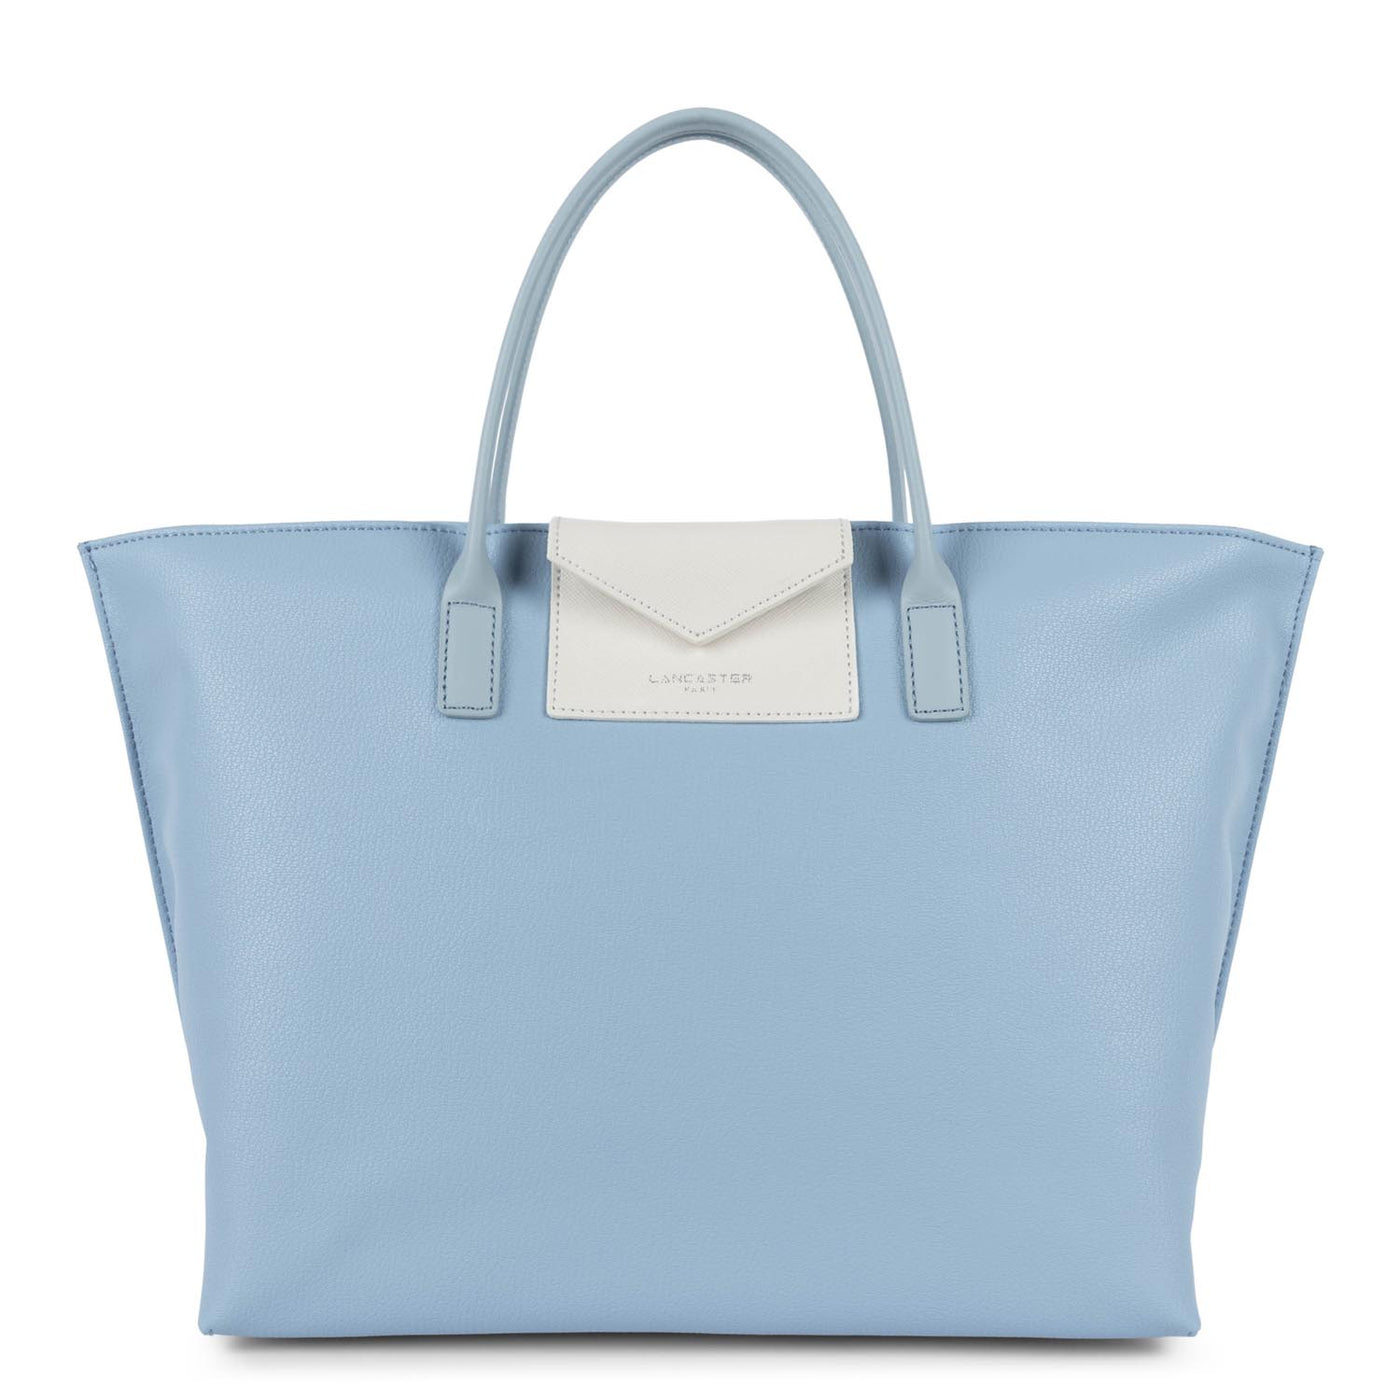 large tote bag - maya #couleur_bleu-ciel-ivoire-bleu-cendre